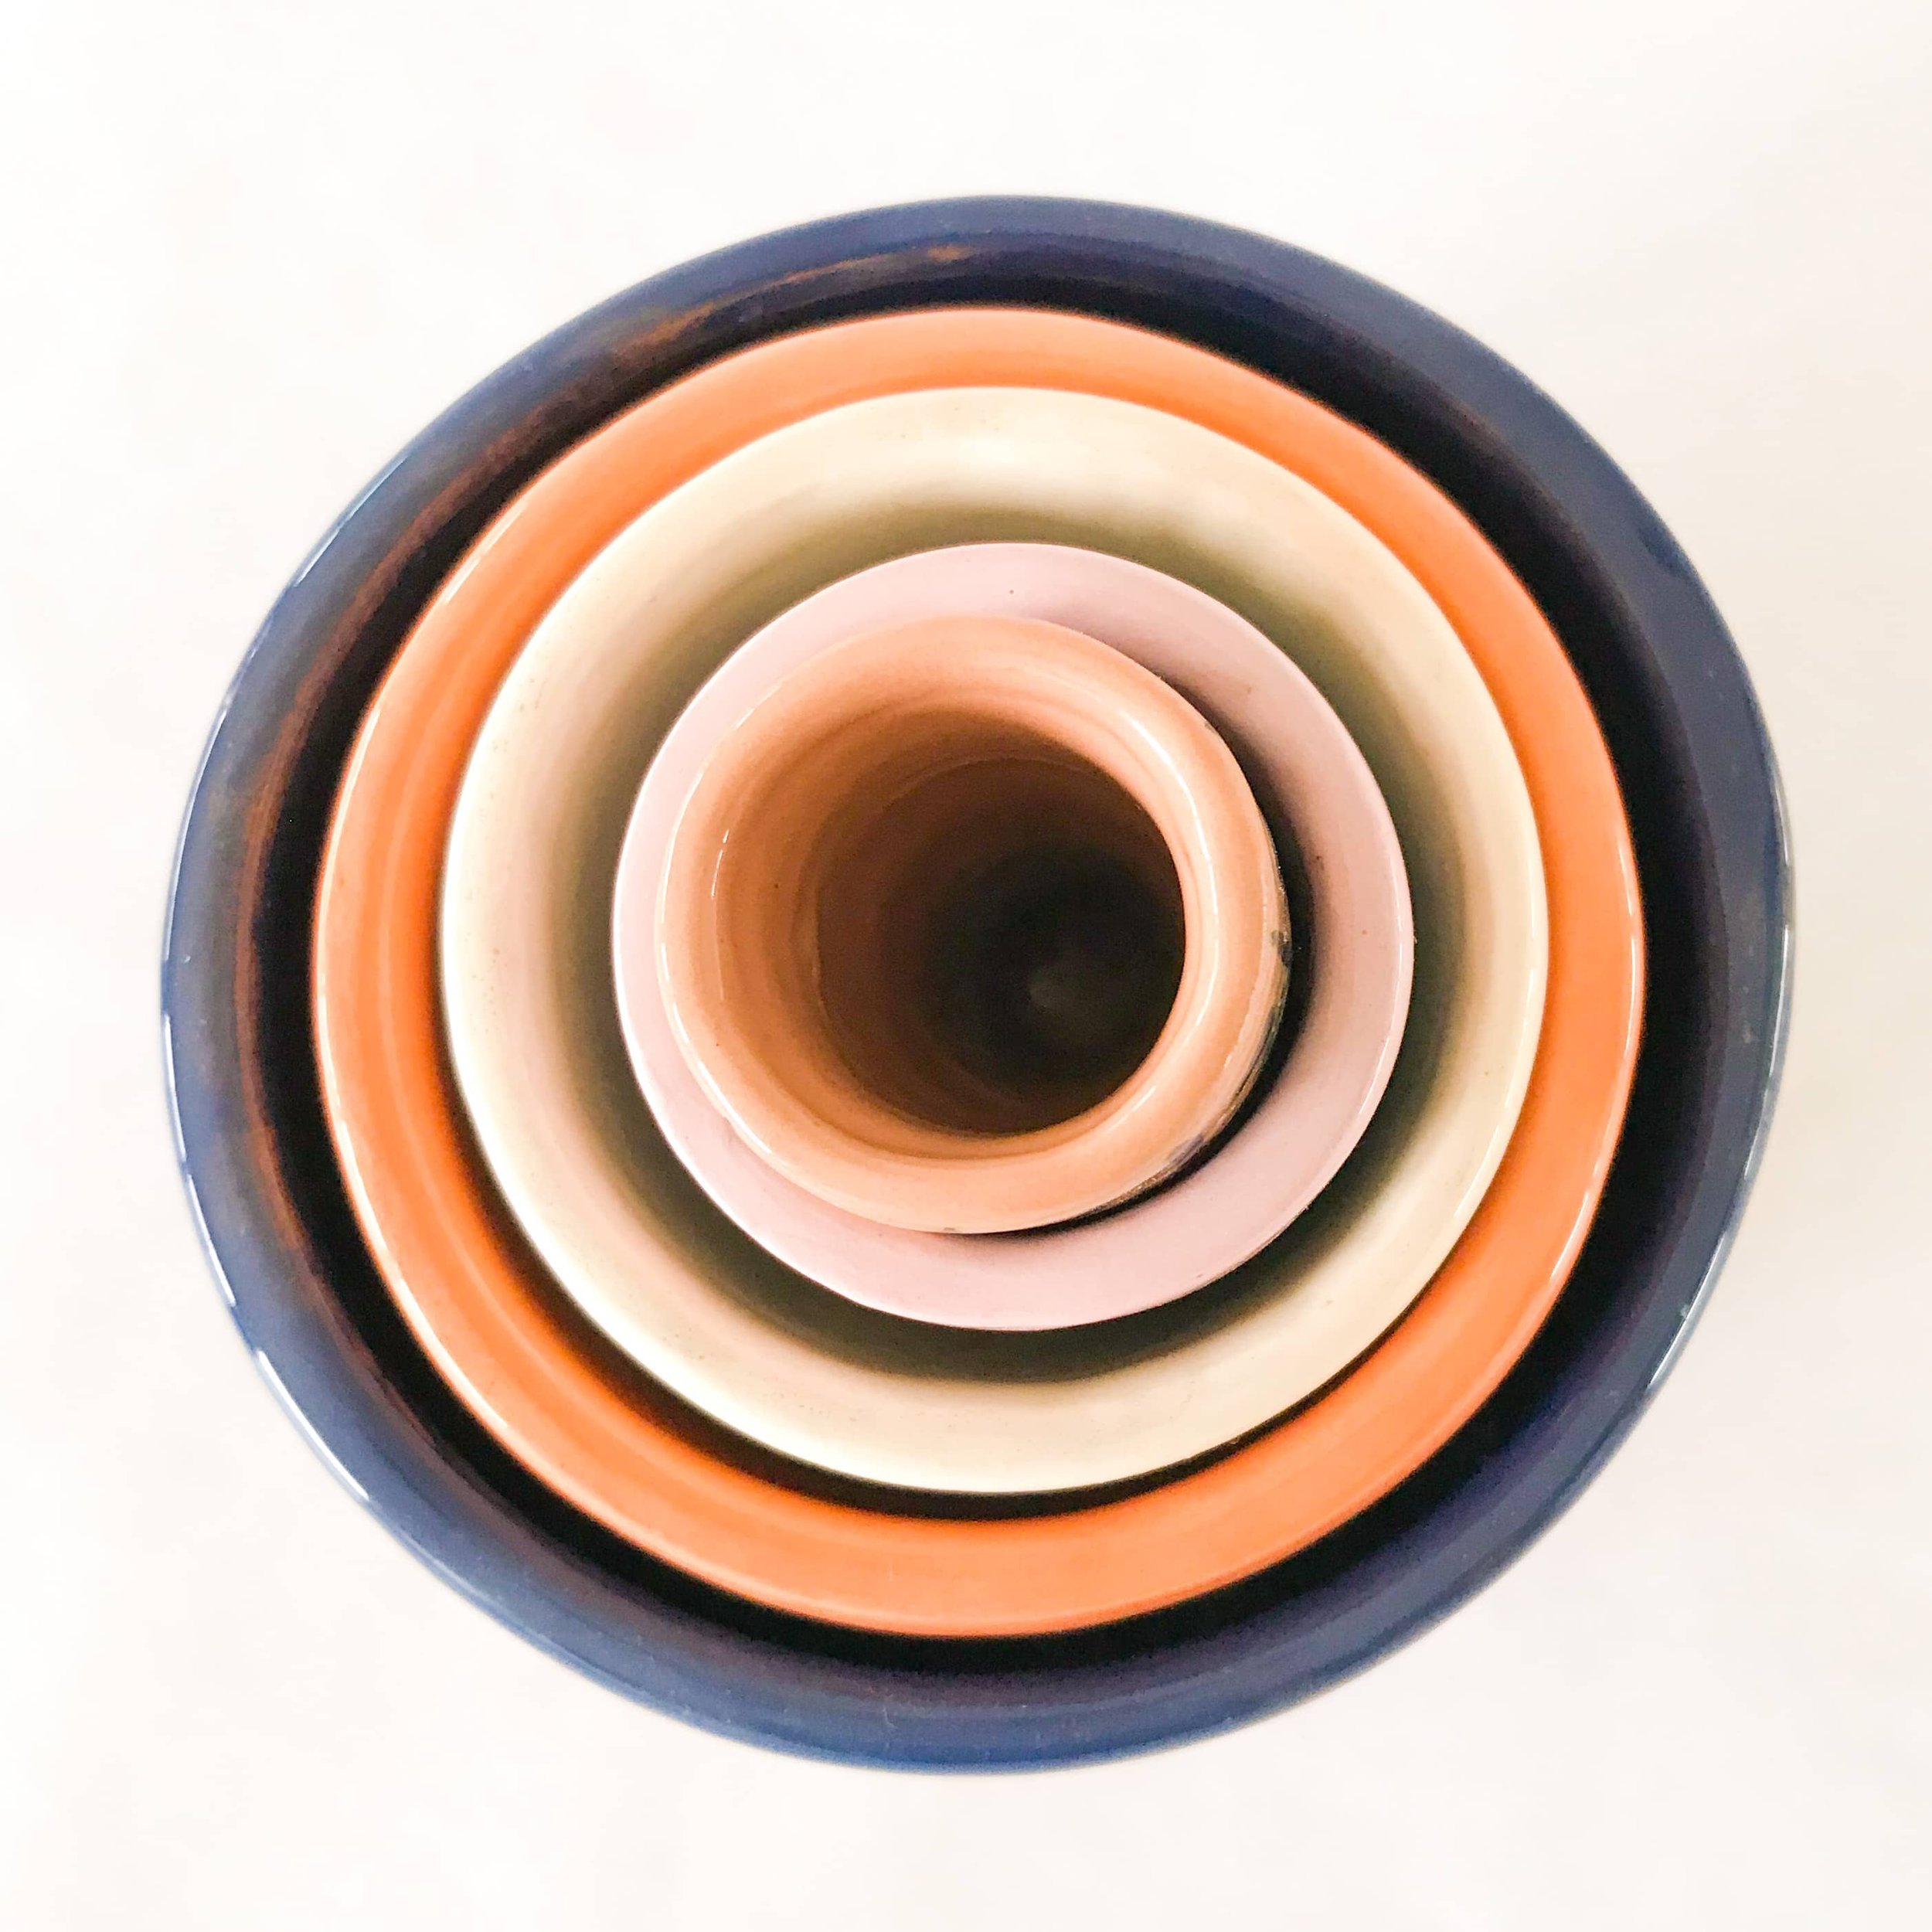 Concentric Vases - Ilaria Gatti